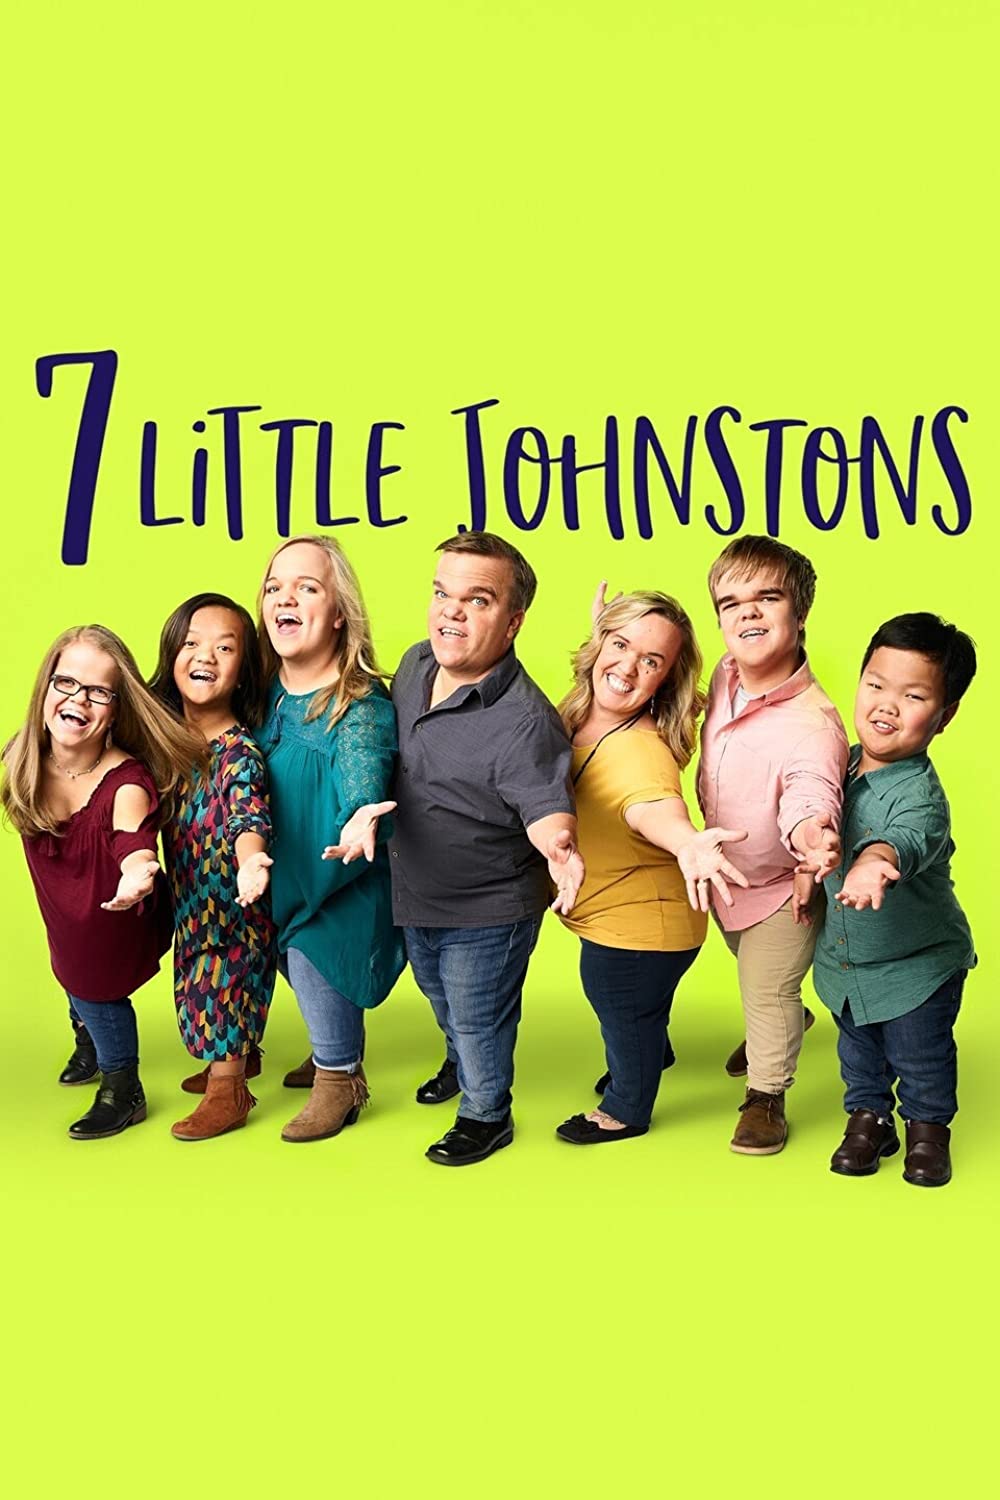 7 Little Johnstons Season 10 Release Date Confirmed By TLC!